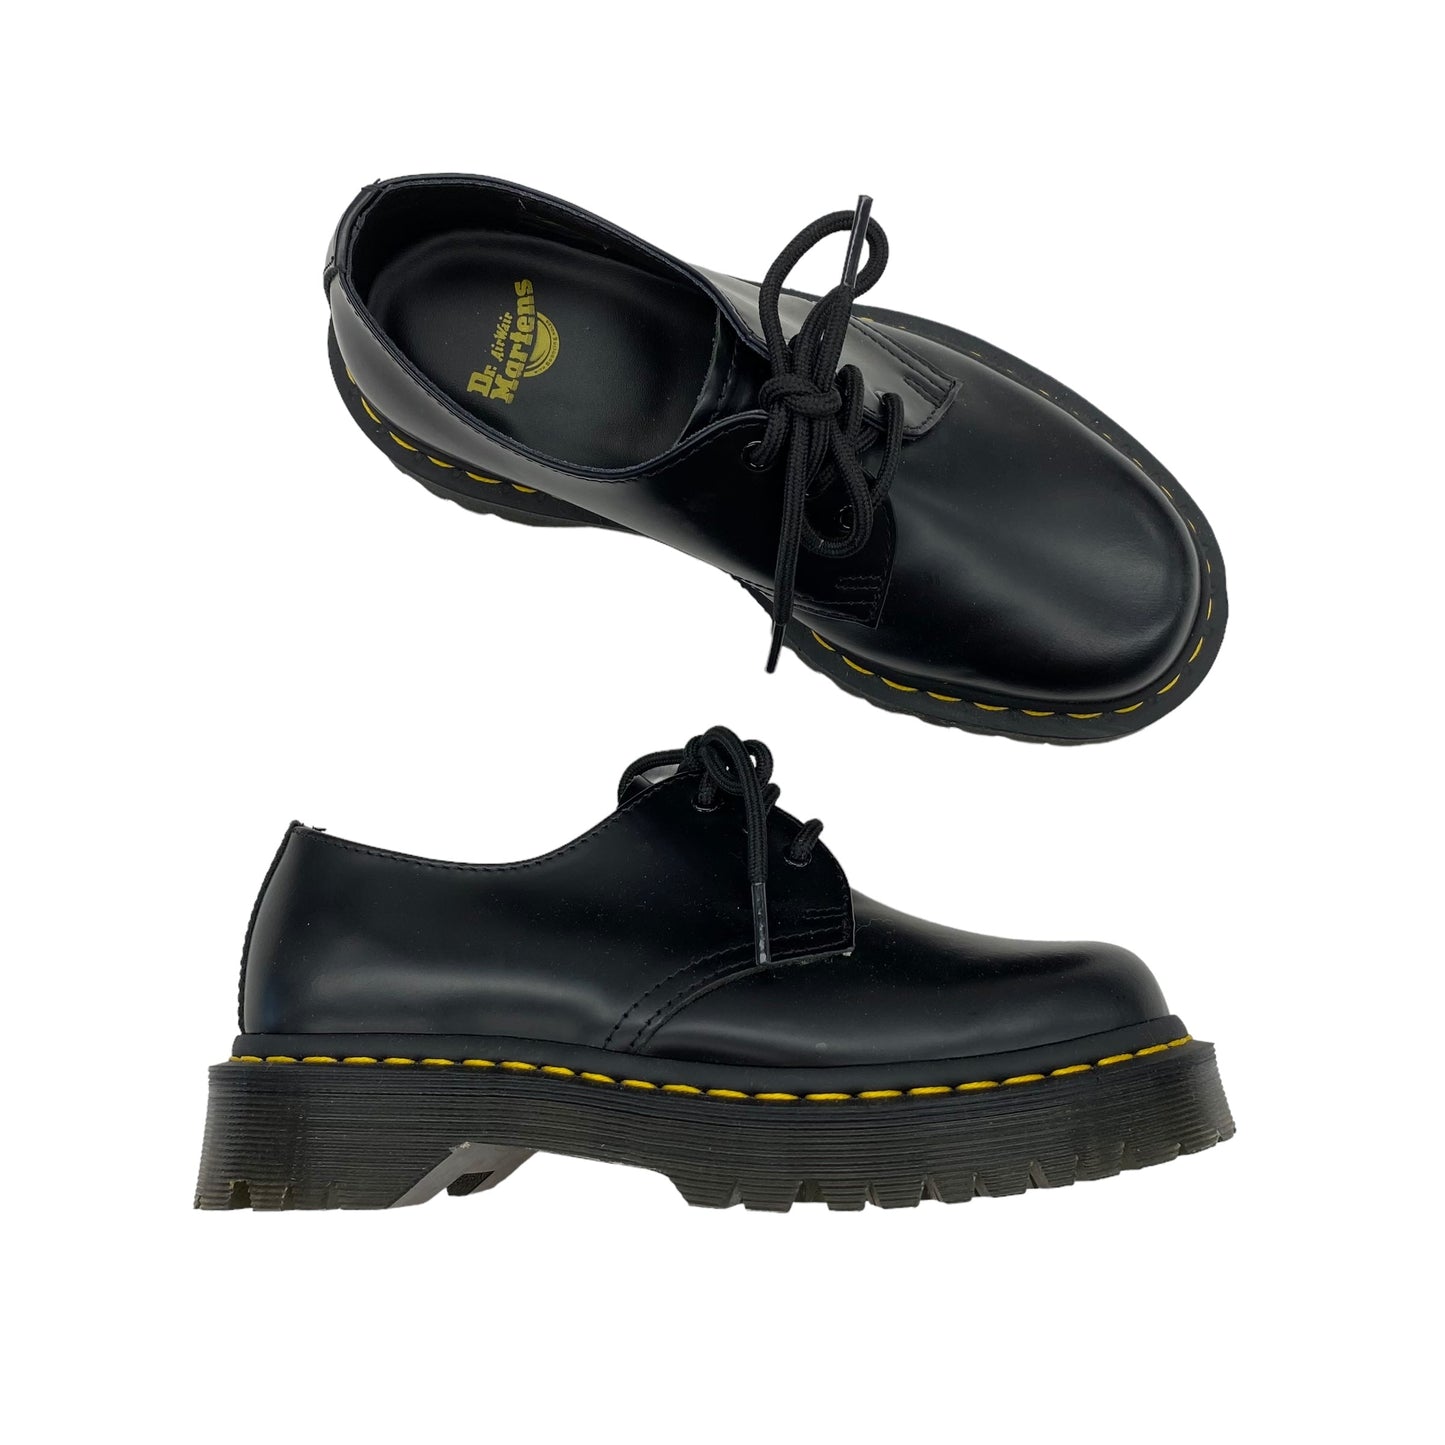 Black Shoes Flats Dr Martens, Size 6